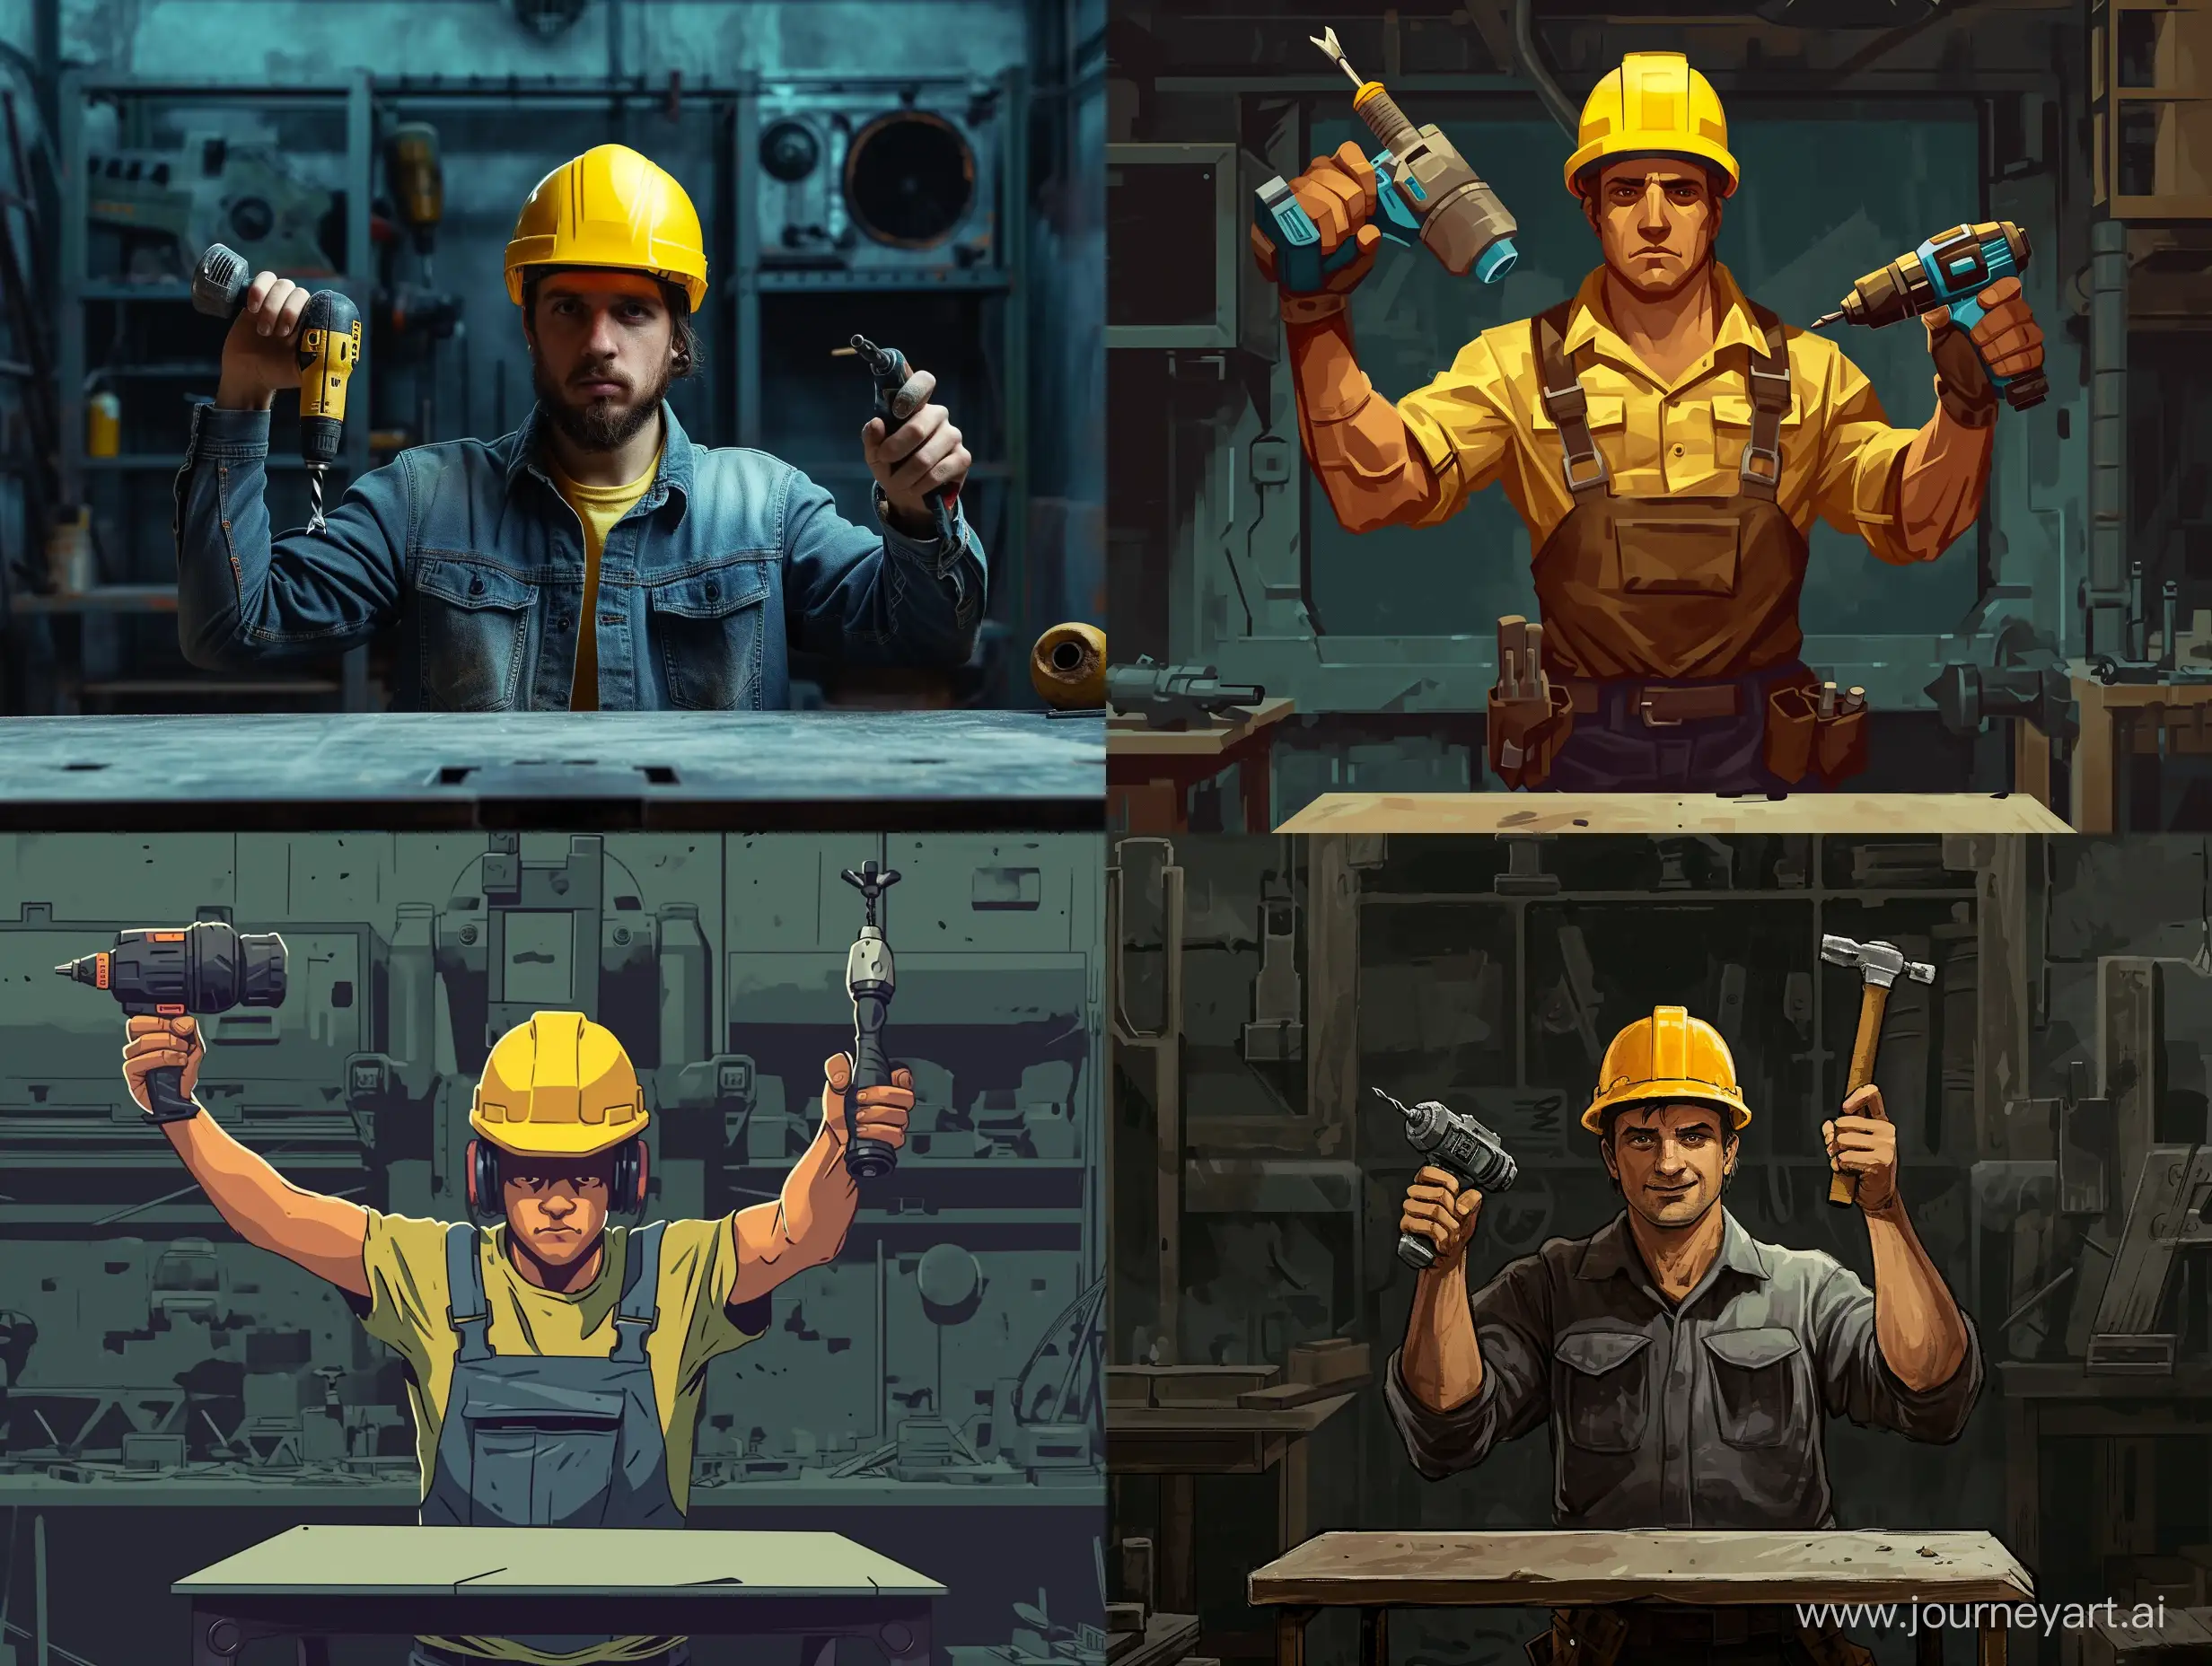 строитель в желтой каске держит в одной руке дрель в другой молоток, а перед ним пустой стол, сзади мастерская все в темных тонах